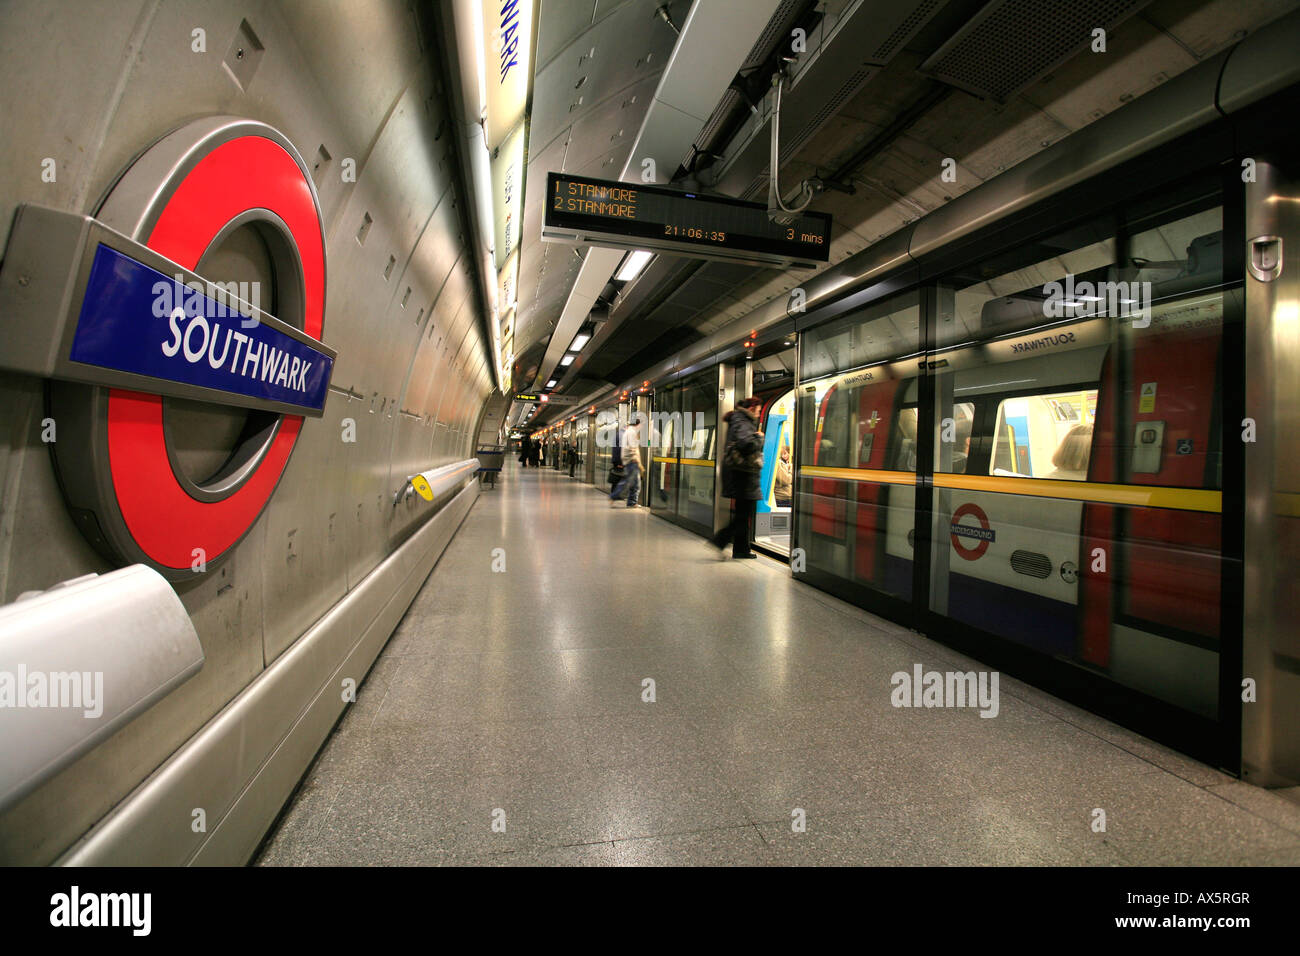 Il logo di tubo e treno arrivando a Southwark la stazione della metropolitana di Londra, Inghilterra, Regno Unito, Europa Foto Stock